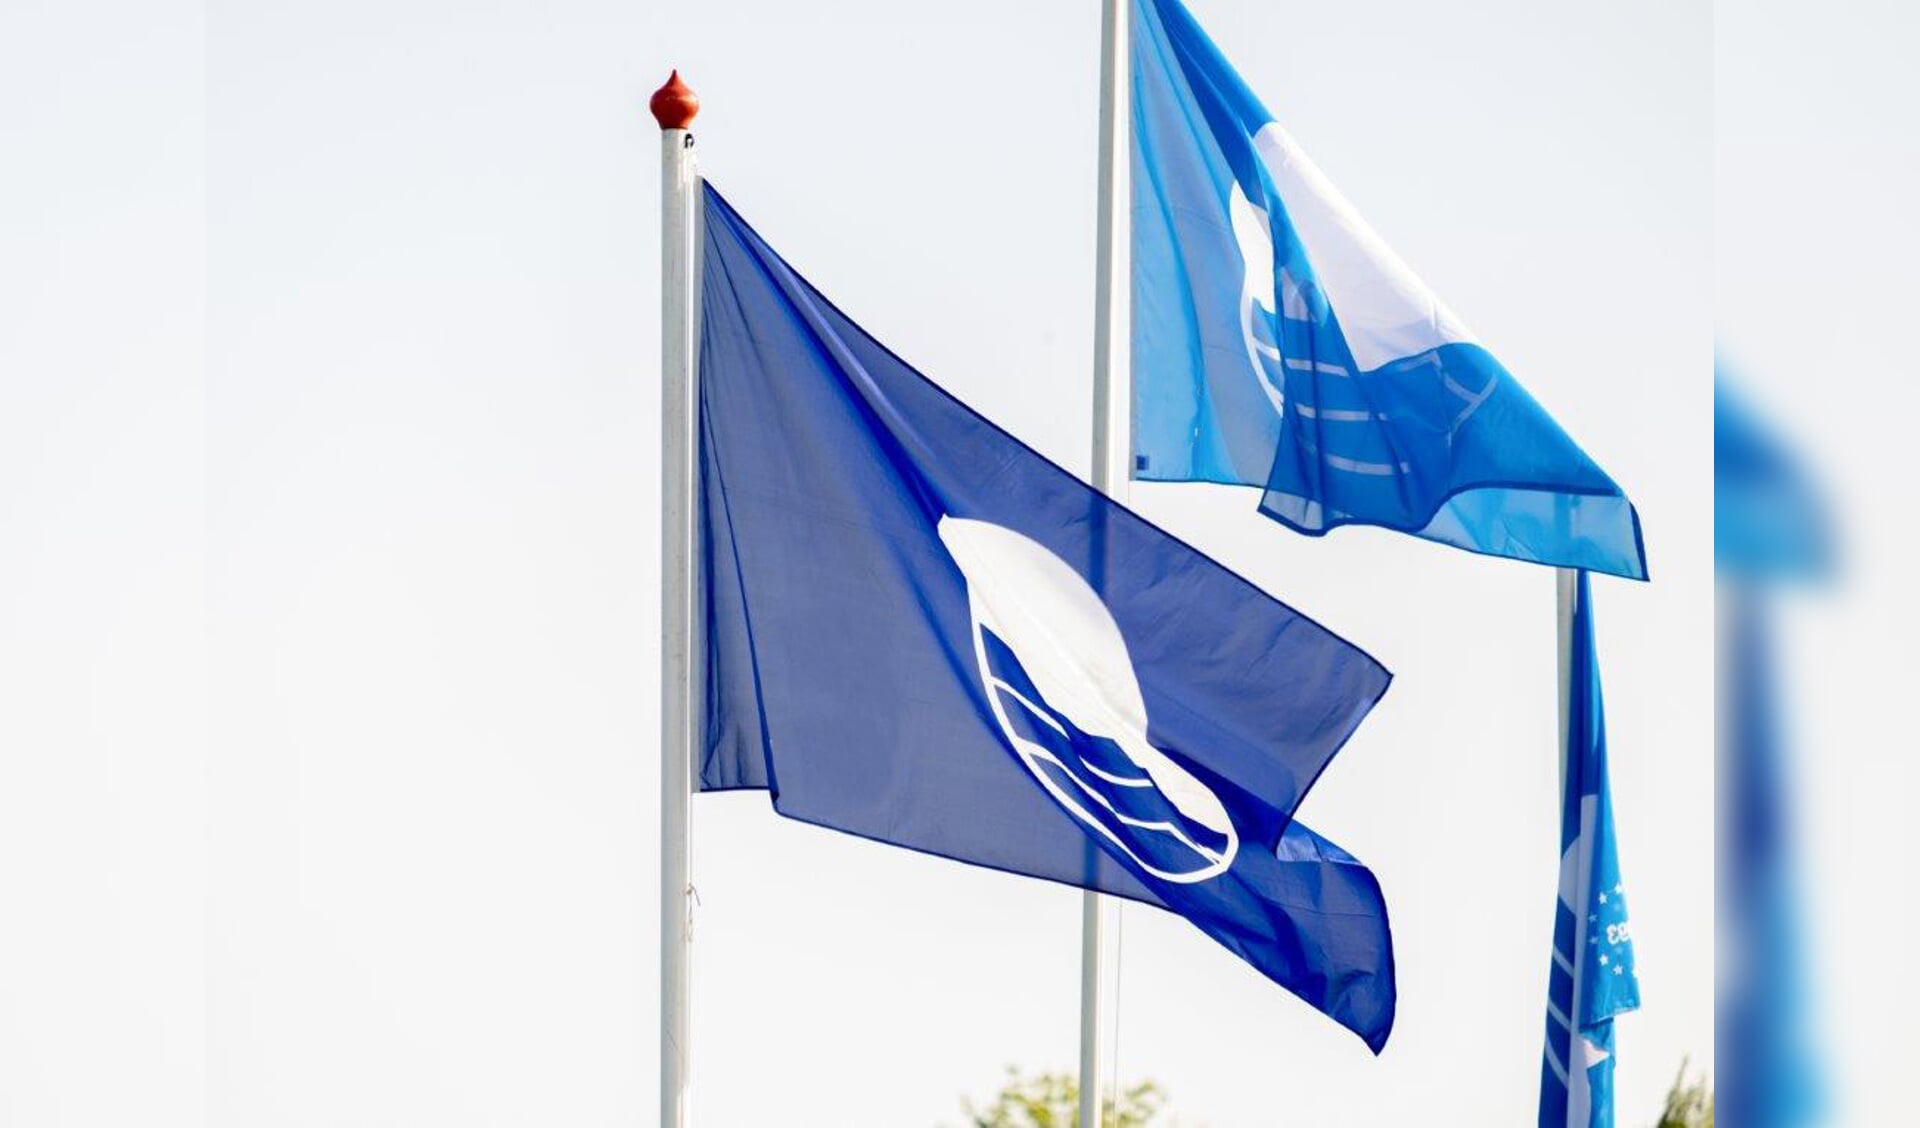 De blauwe vlag is opnieuw gehesen op het strand van Castricum.